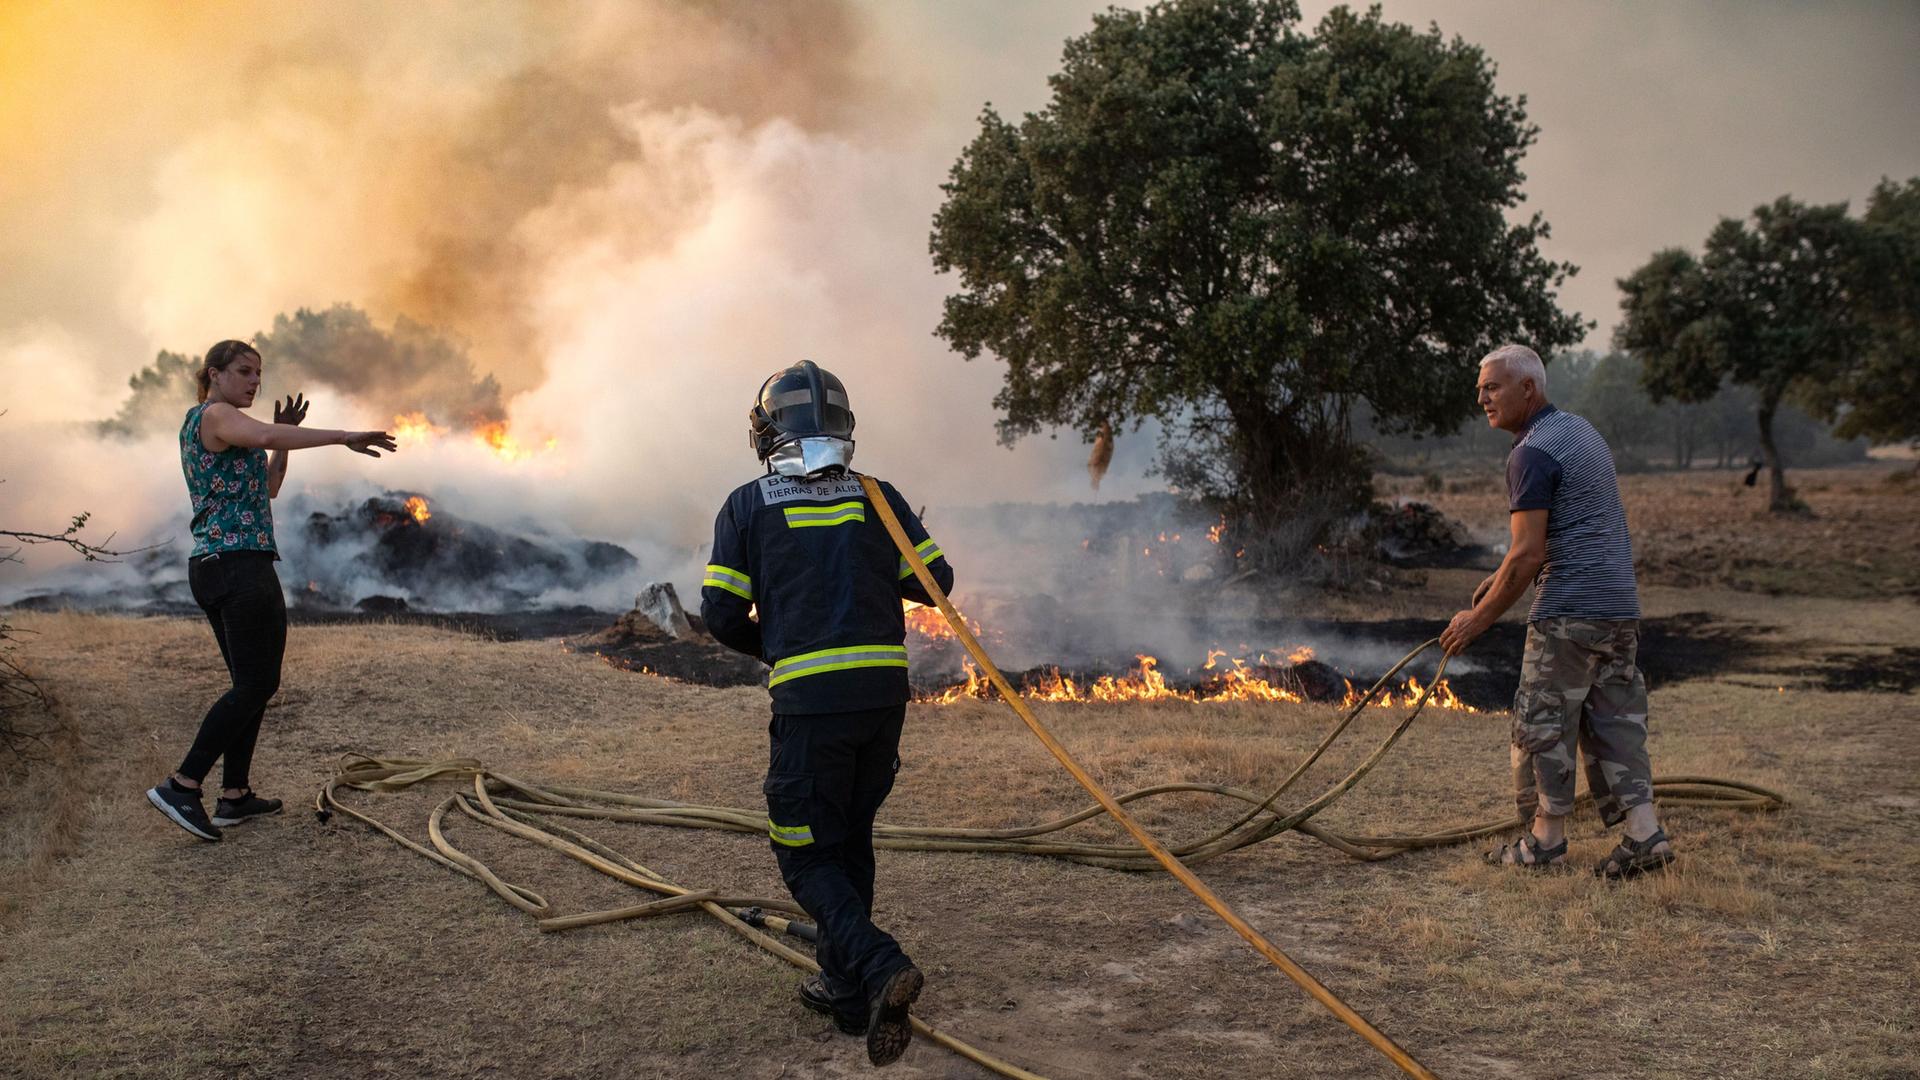 Spanien, Losacio: Ein Feuerwehrmann und zwei Nachbarn arbeiten daran, den Brand in Losacio zu löschen. Ein Mitglied der Feuerwehr, das mit dem Löschen des Brandes beschäftigt war, ist infolge des raschen Fortschreitens der Flammen in dem Gebiet ums Leben gekommen.